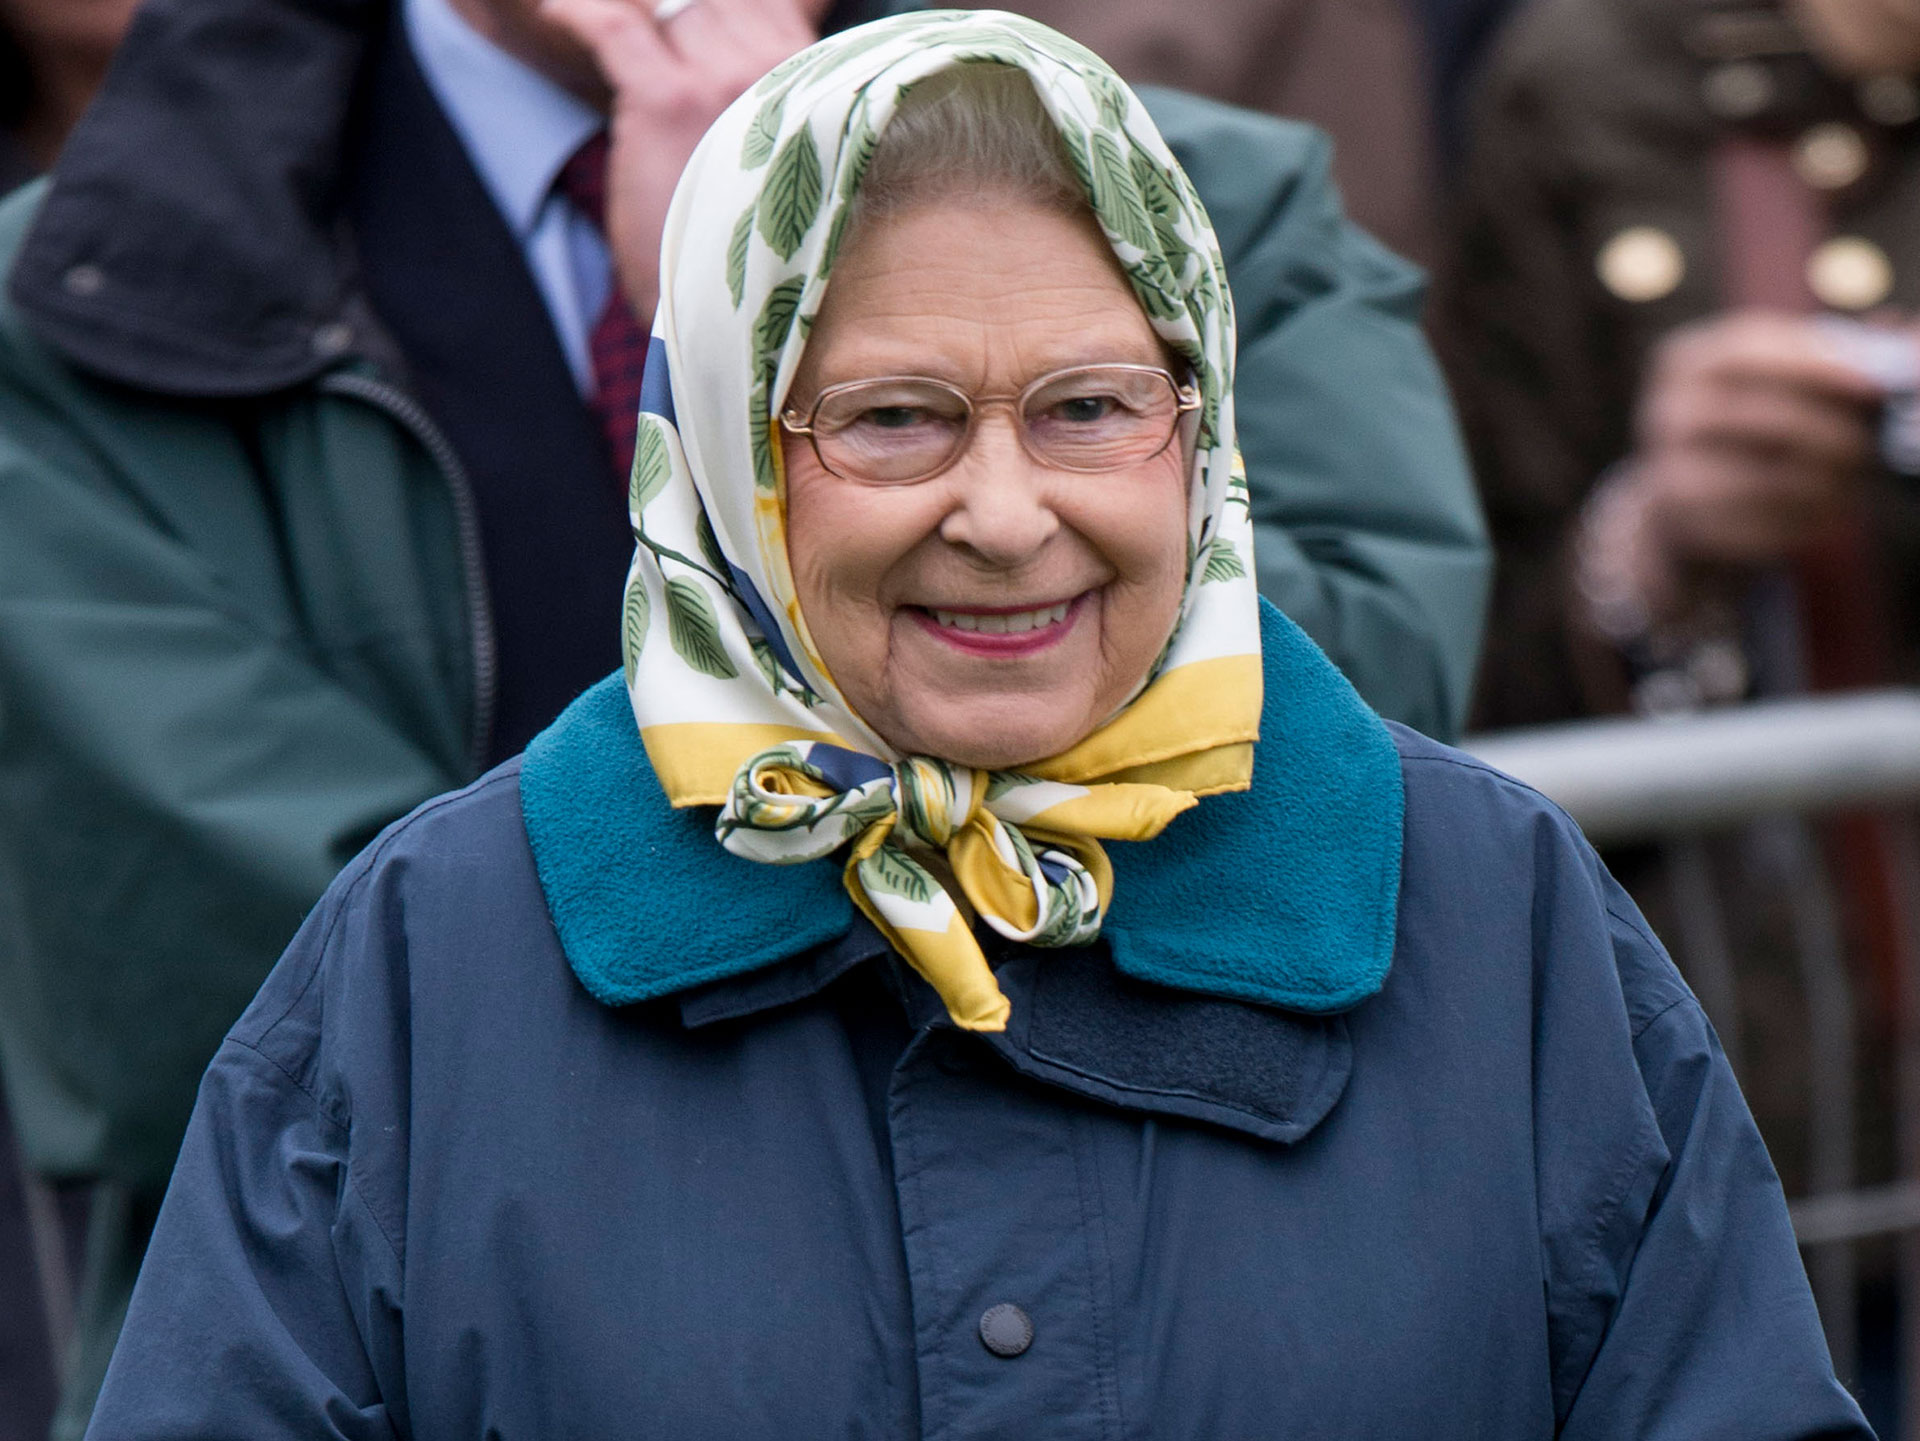 Queen Elizabeth II wearing glasses